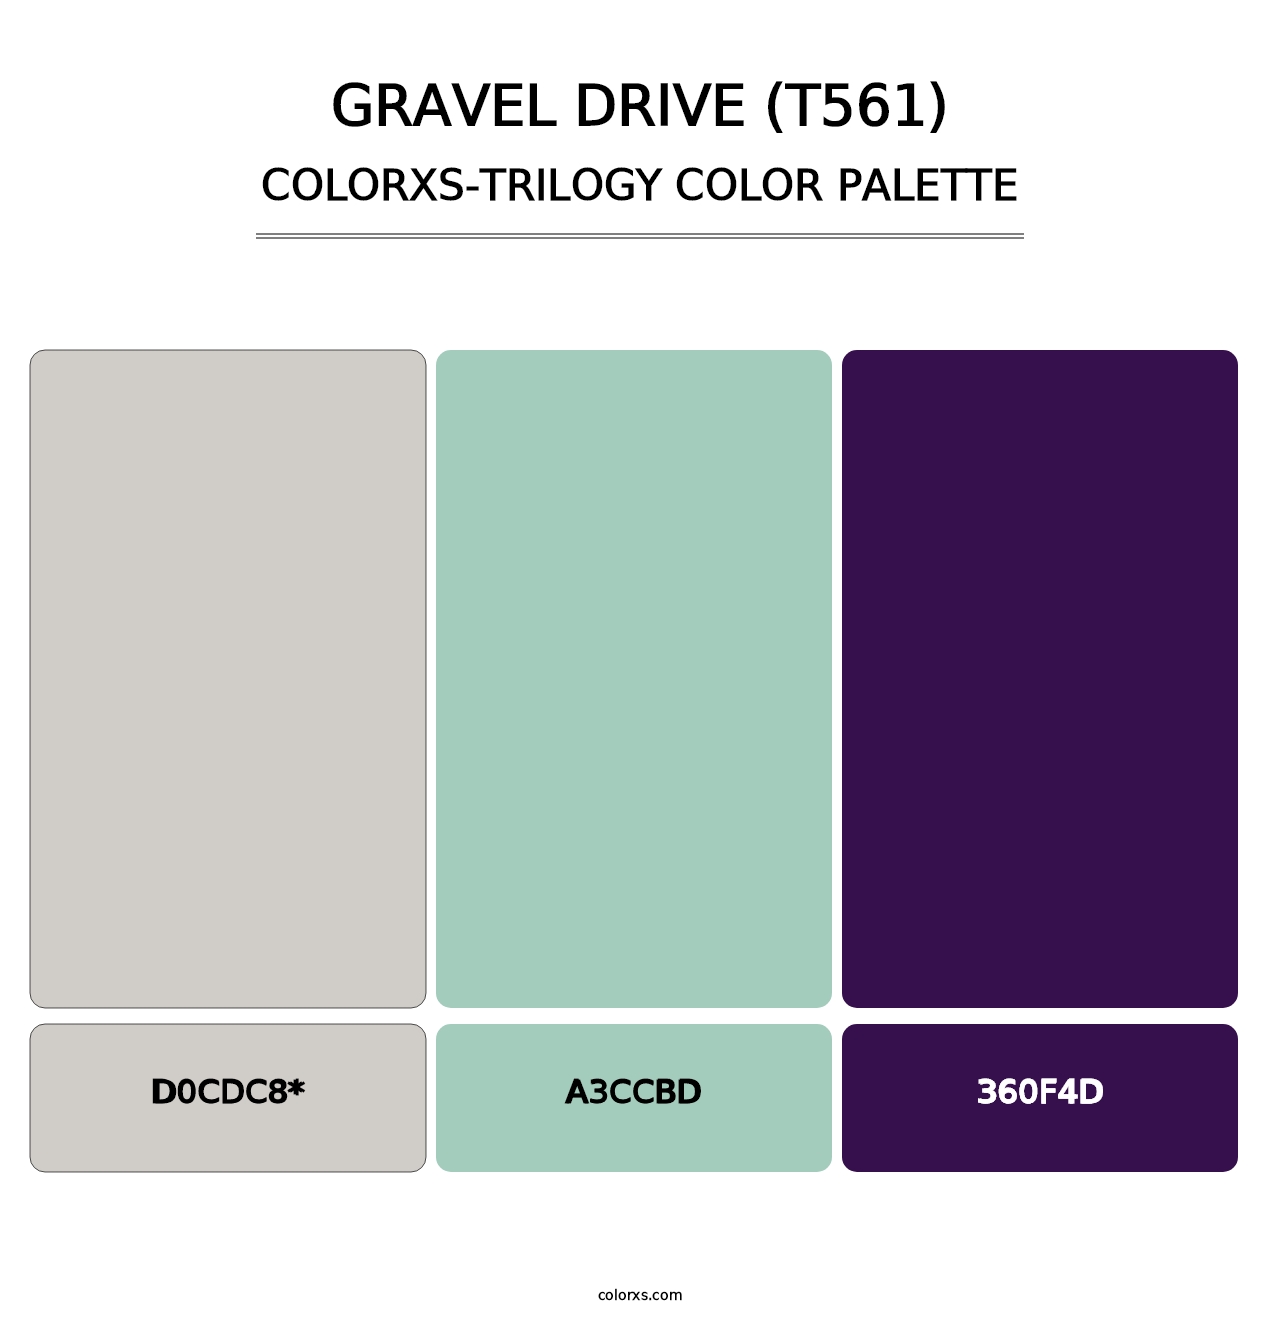 Gravel Drive (T561) - Colorxs Trilogy Palette